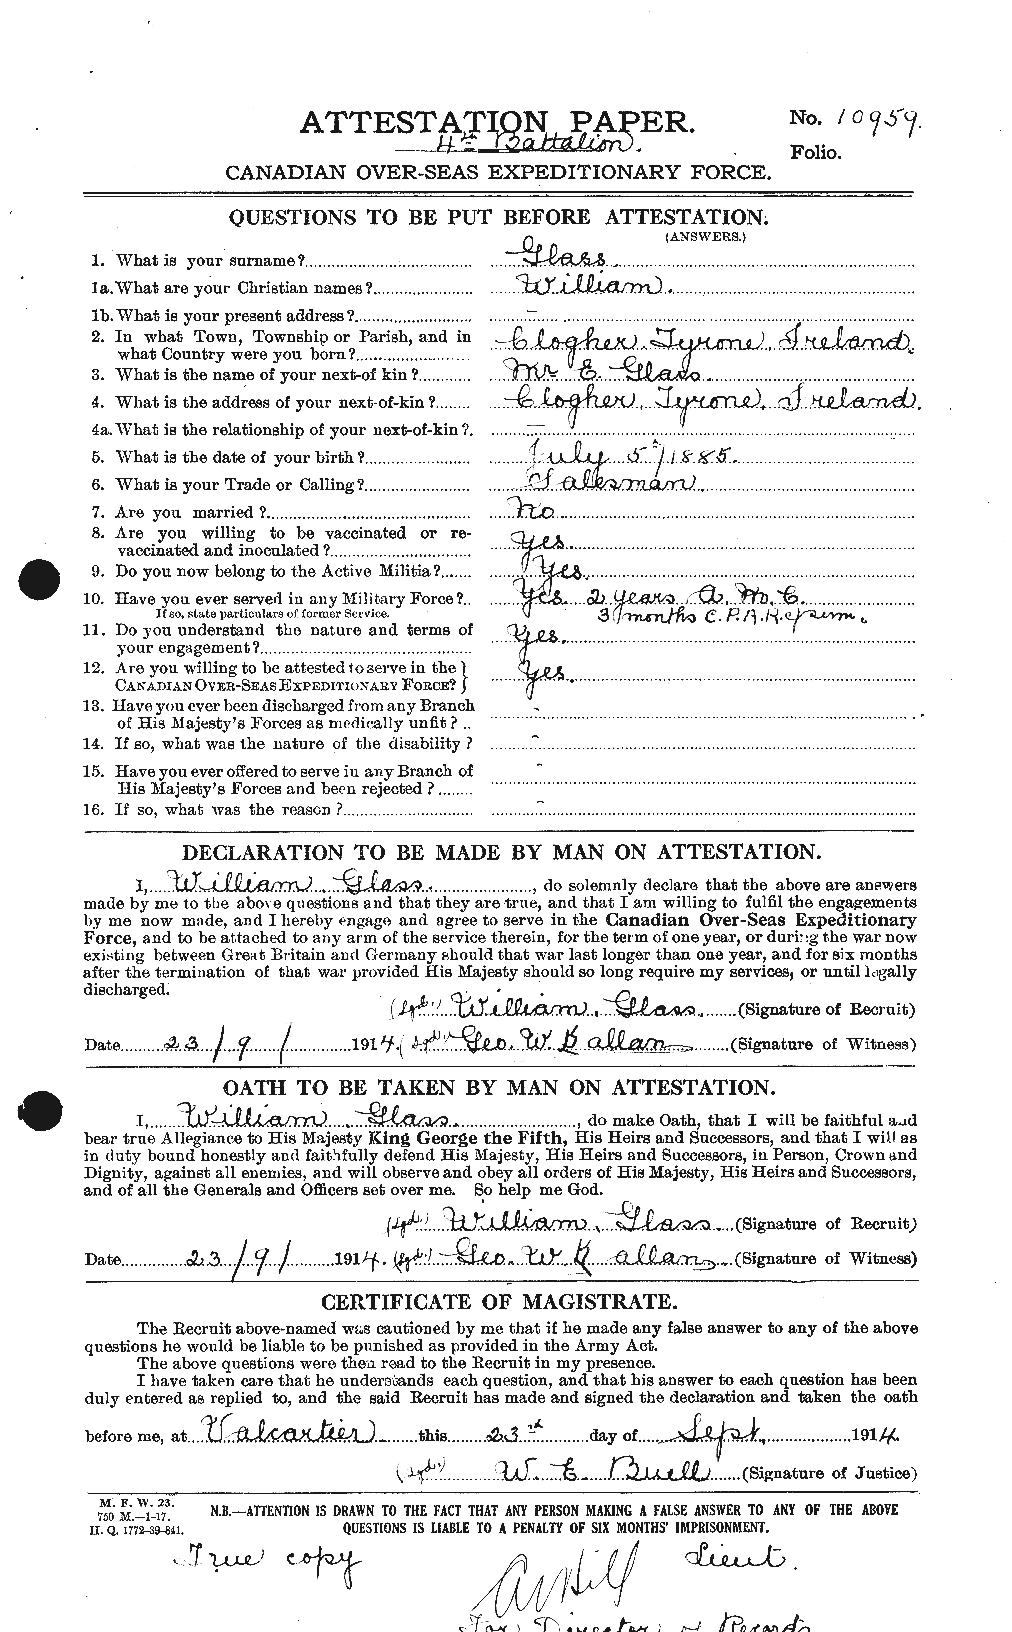 Dossiers du Personnel de la Première Guerre mondiale - CEC 349881a